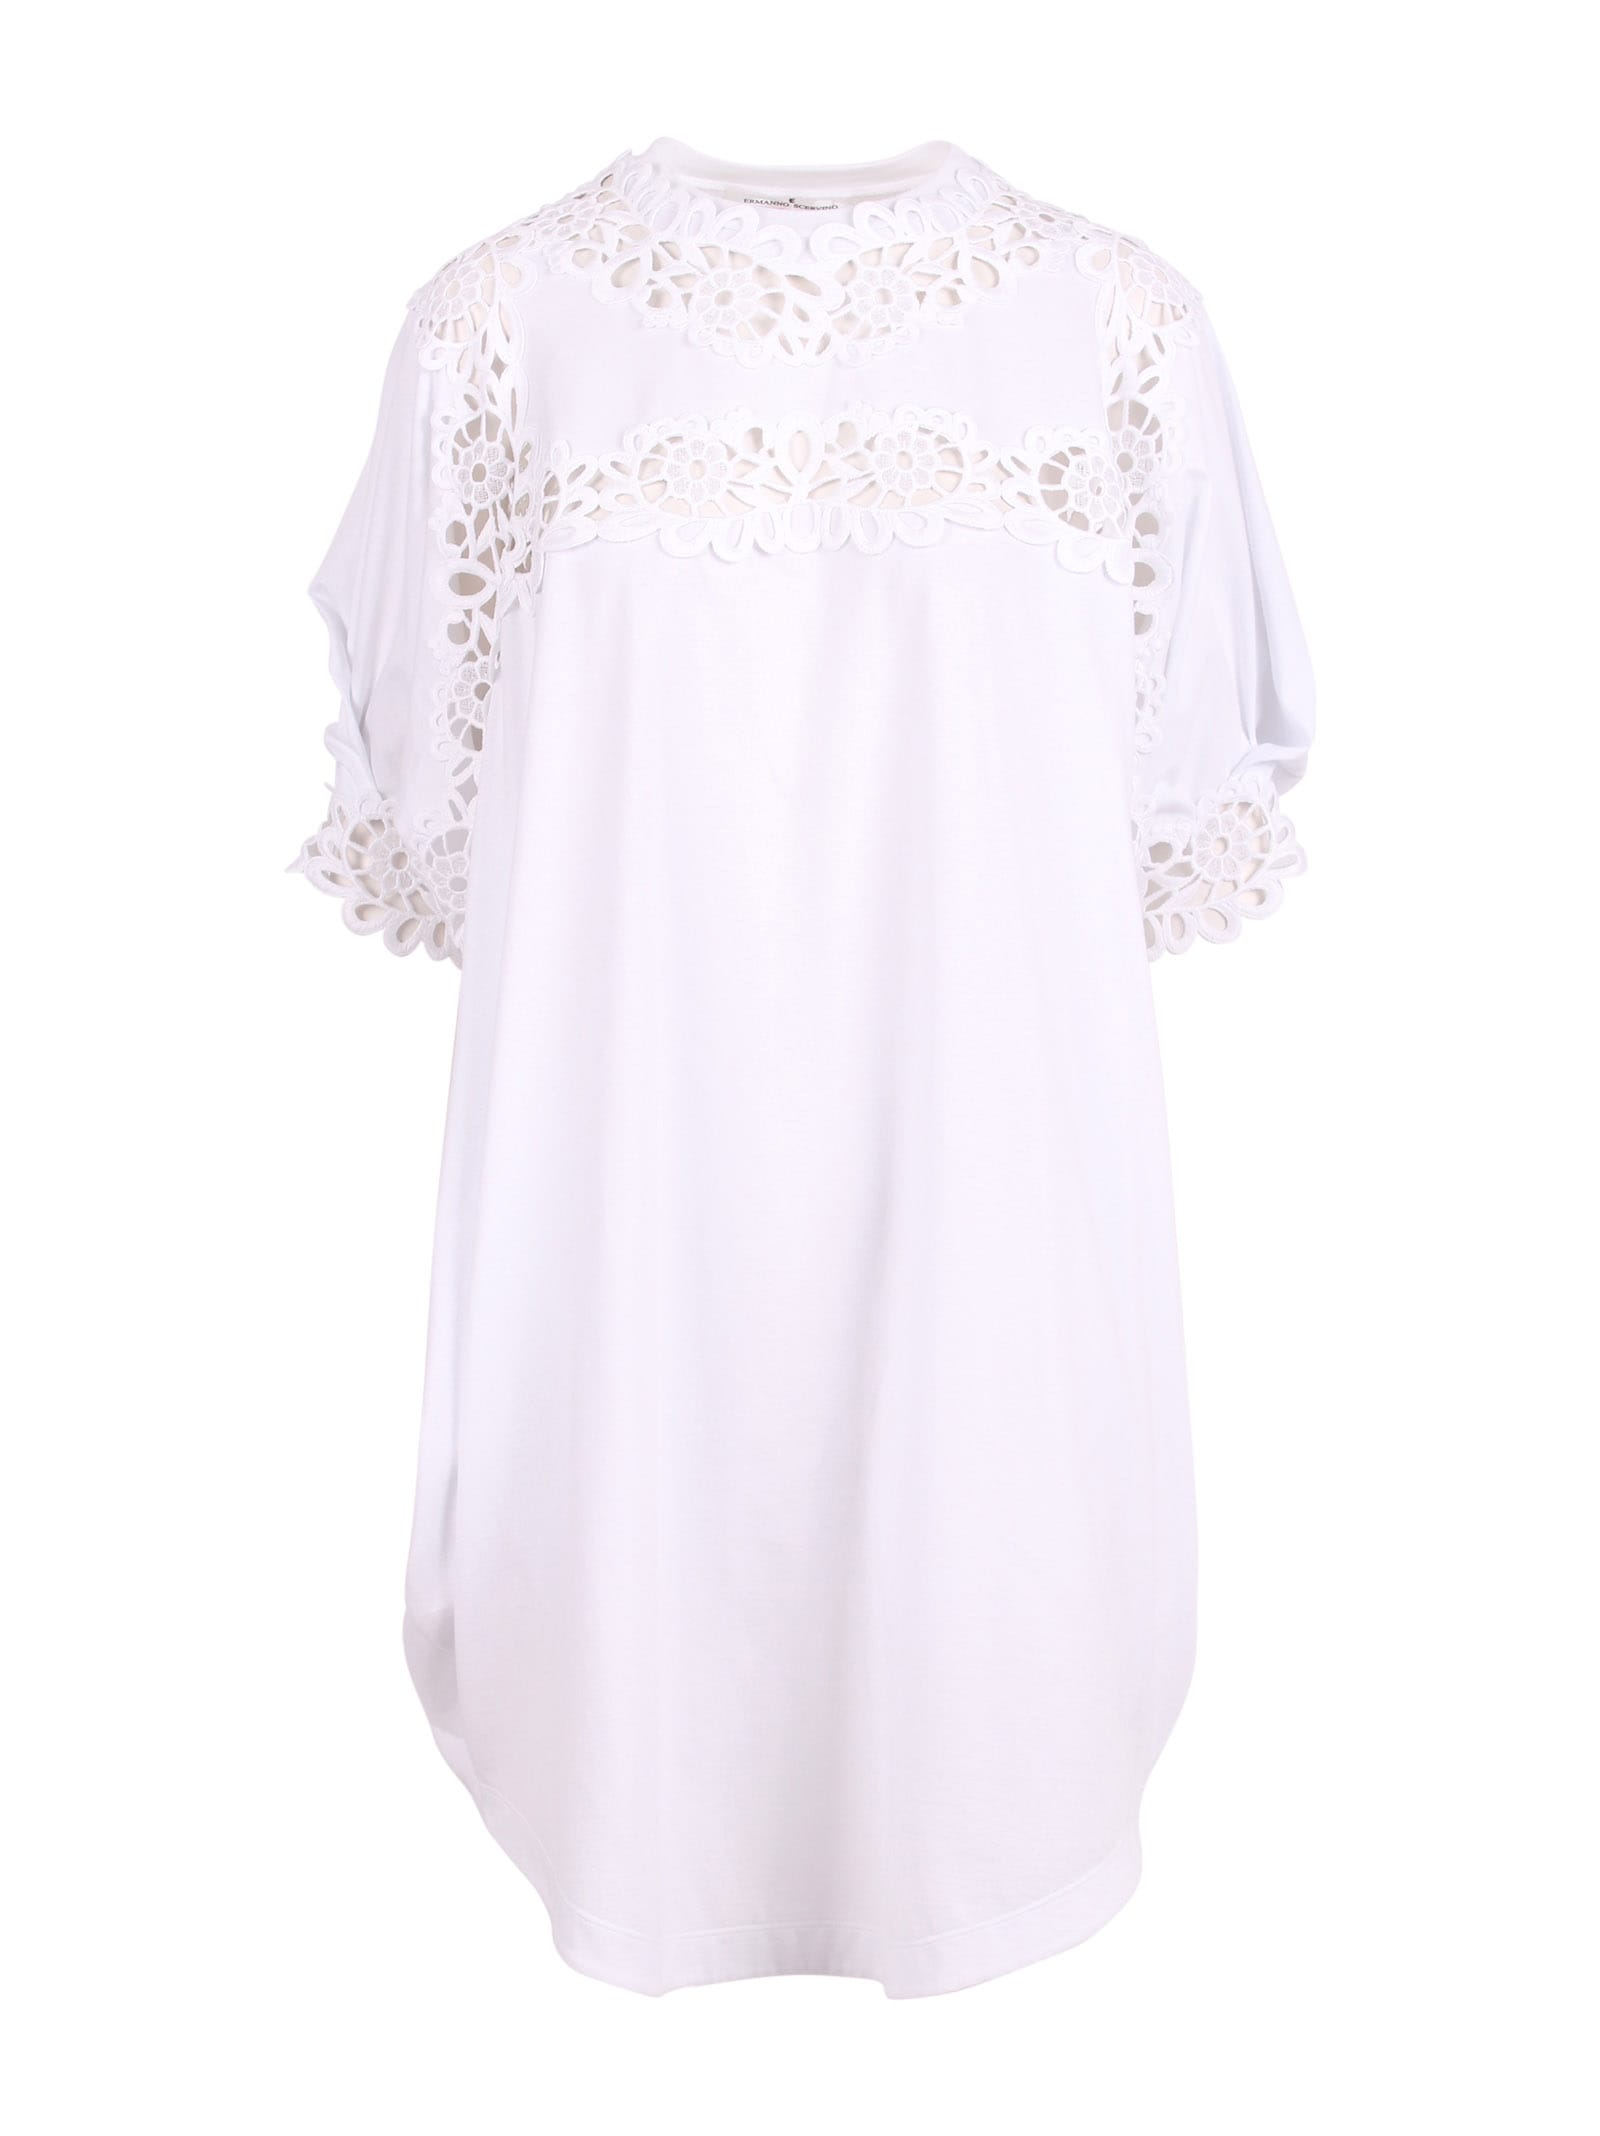 Ermanno Scervino Lace Floral Details Short Cotton Dress